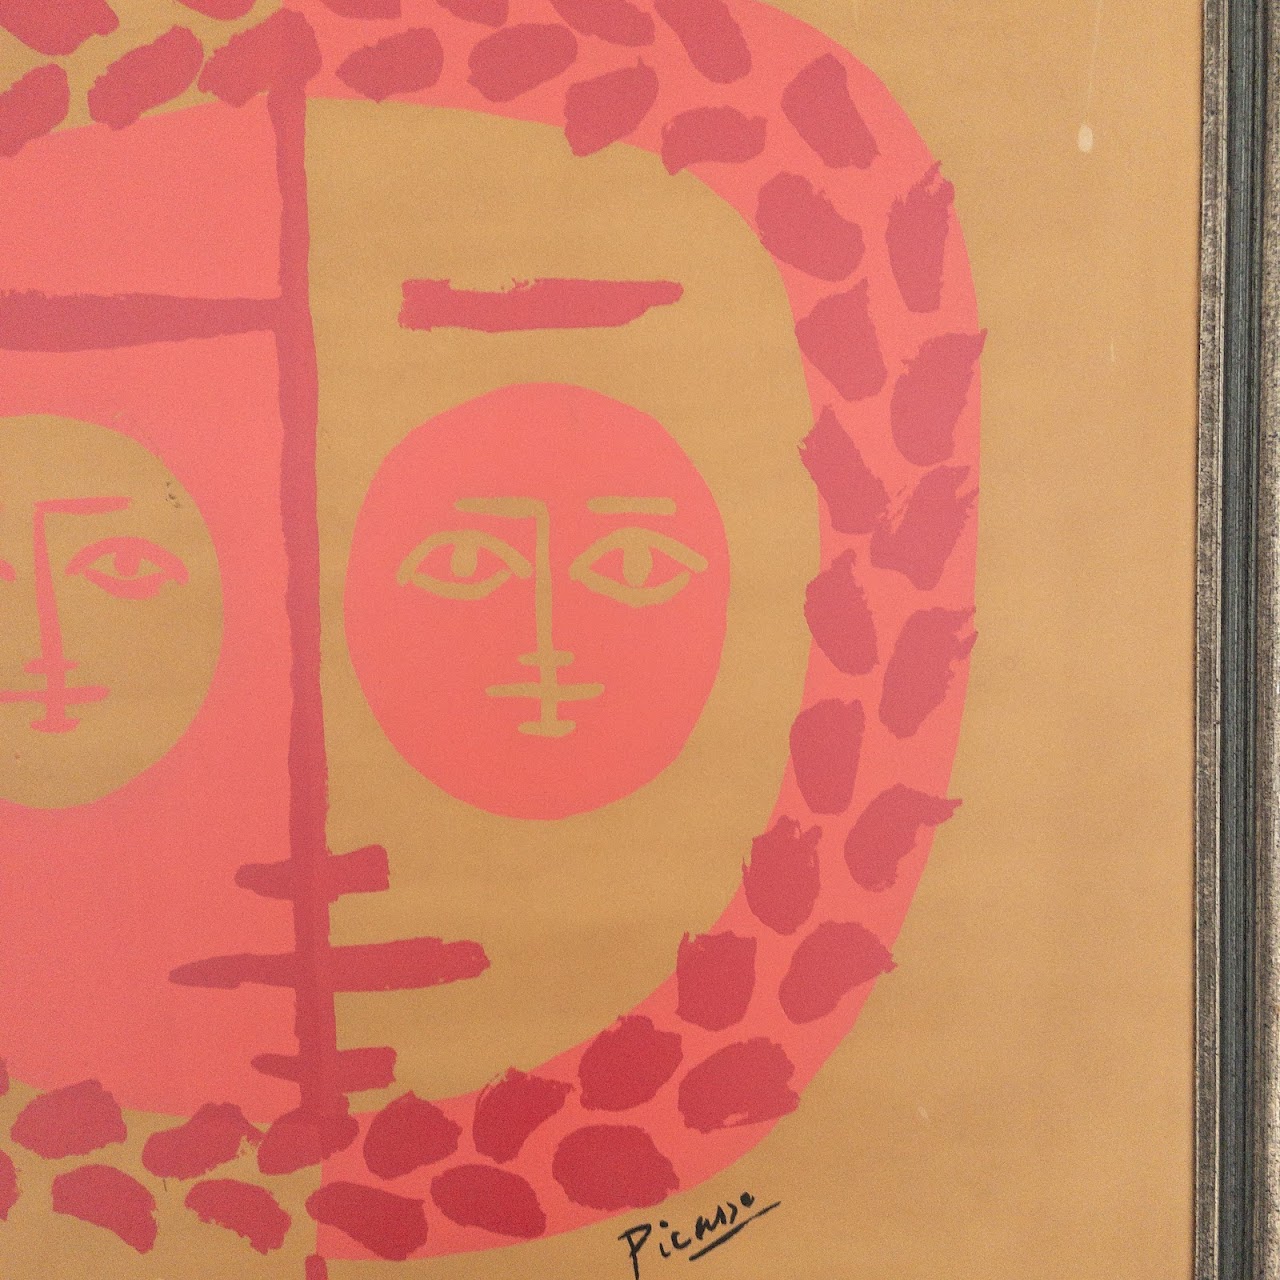 Picasso 'Poteries - Ceramiques' Galerie Triel Exhibition Serigraph Poster